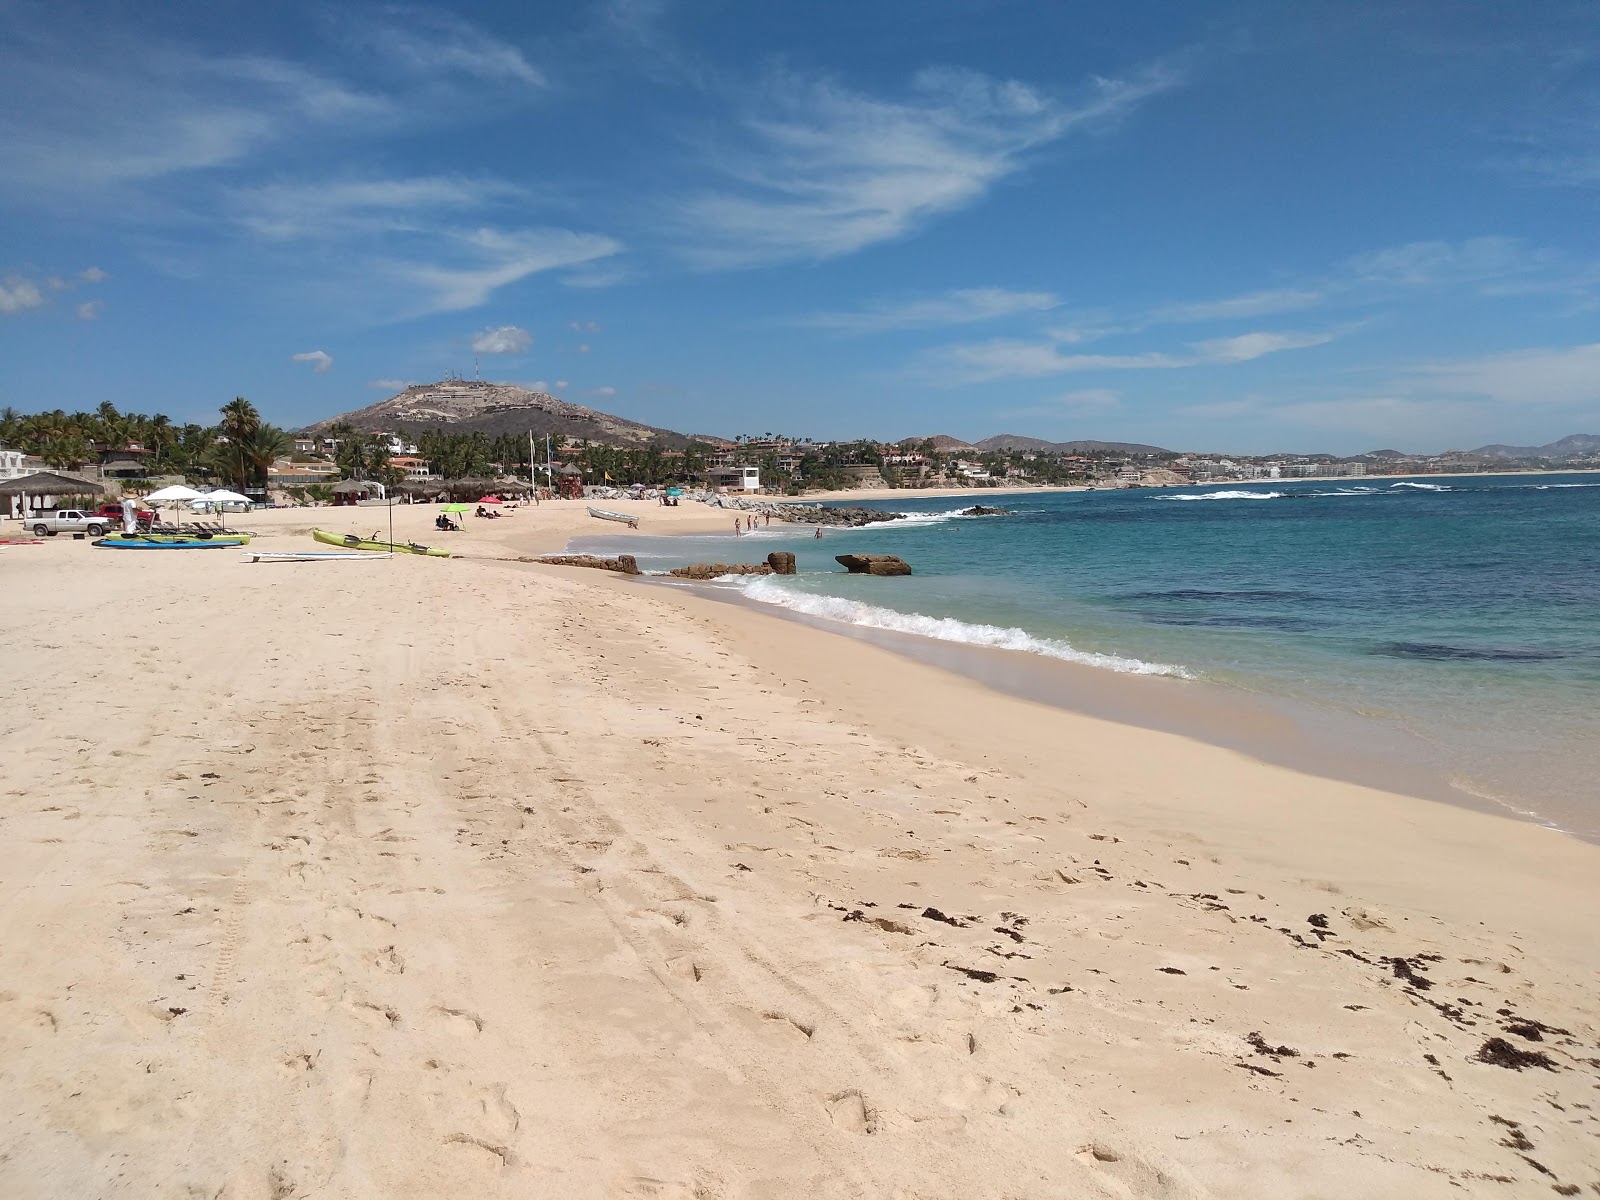 Fotografie cu Playa Palmilla cu o suprafață de apa pură turcoaz